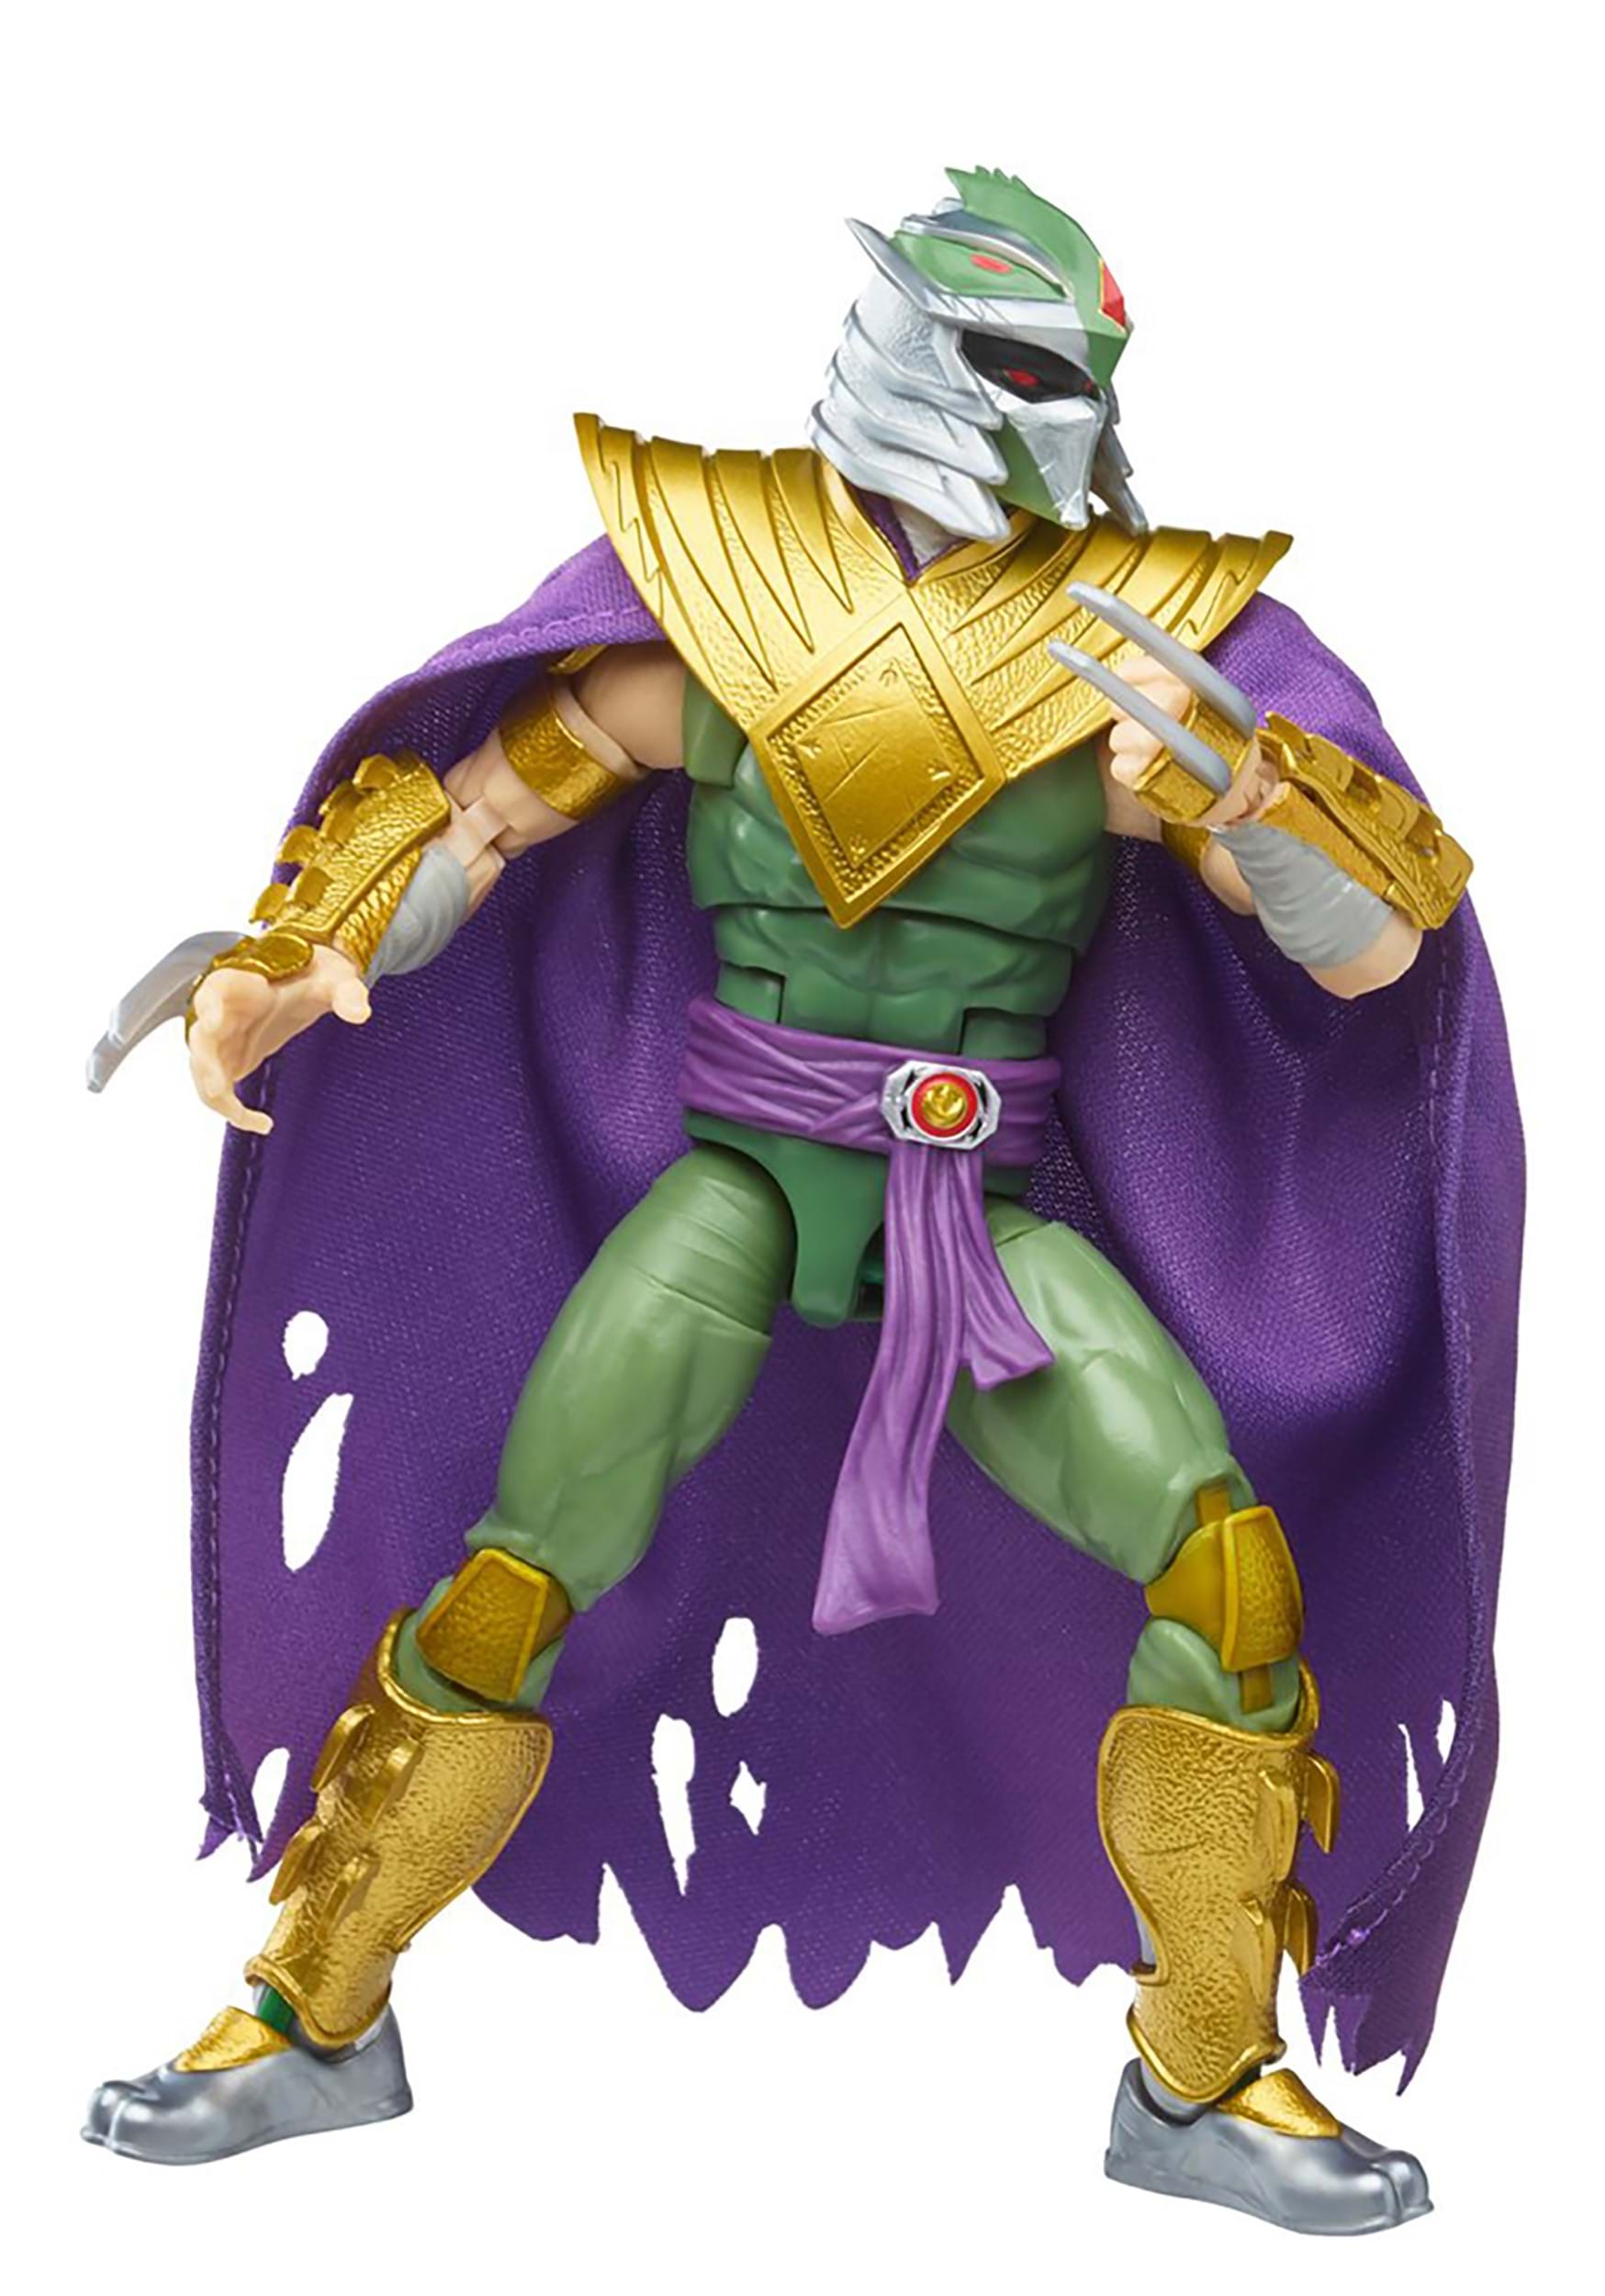 Power Rangers X TMNT Lightning Collection Morphed Shredder Green Ranger Action Figure